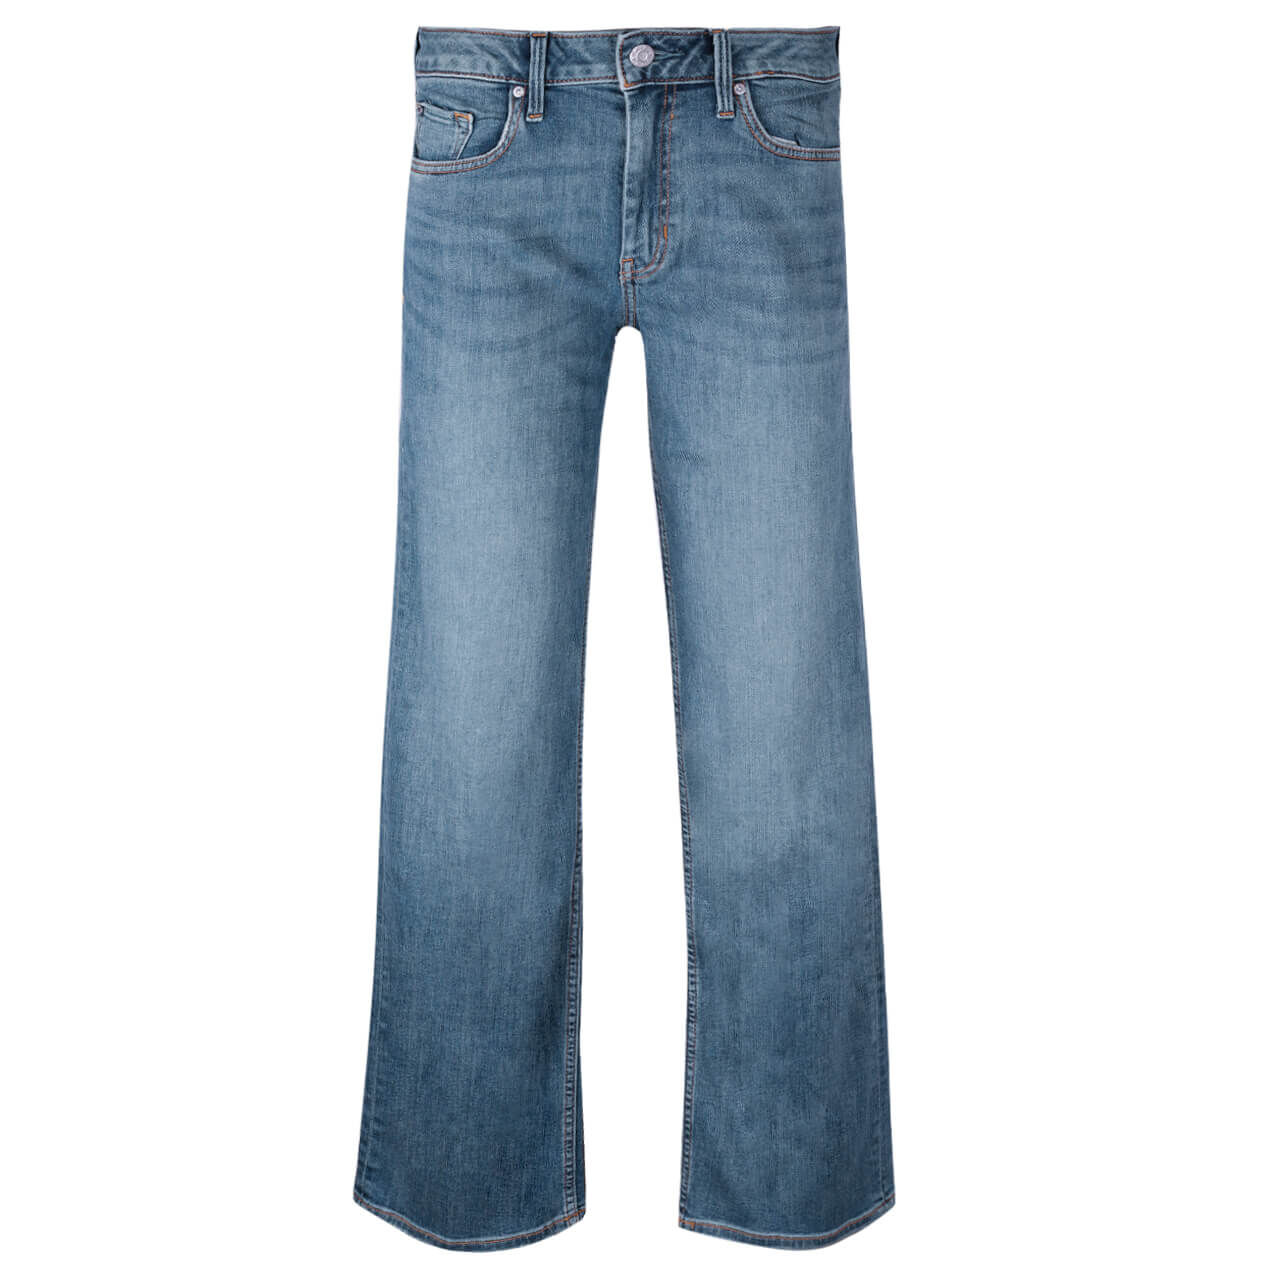 s. oliver s.oliver damen jeans karolin light blue washed 34/32 blau donna